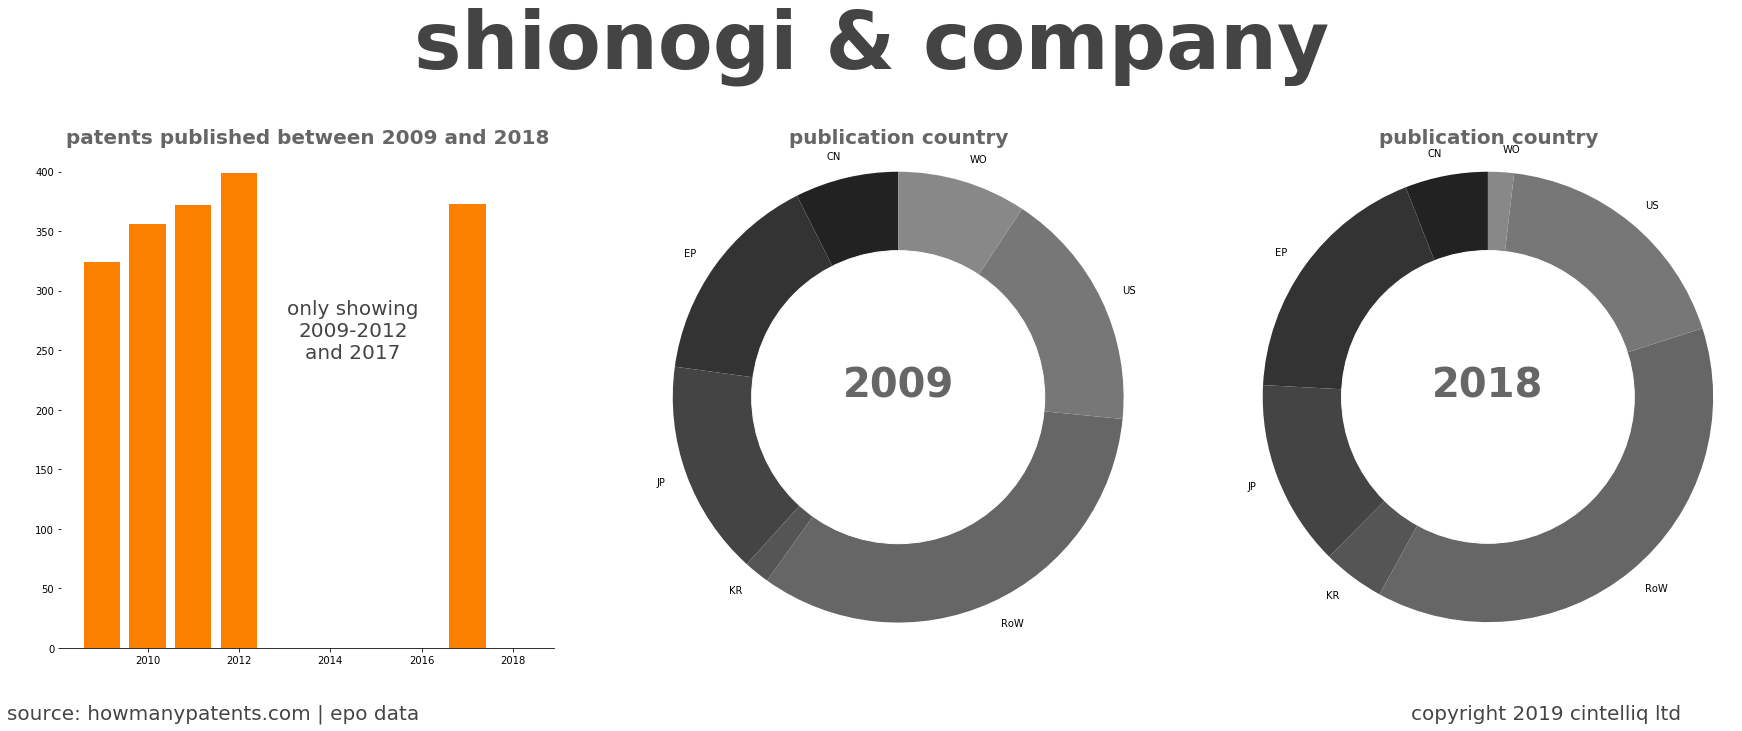 summary of patents for Shionogi & Company